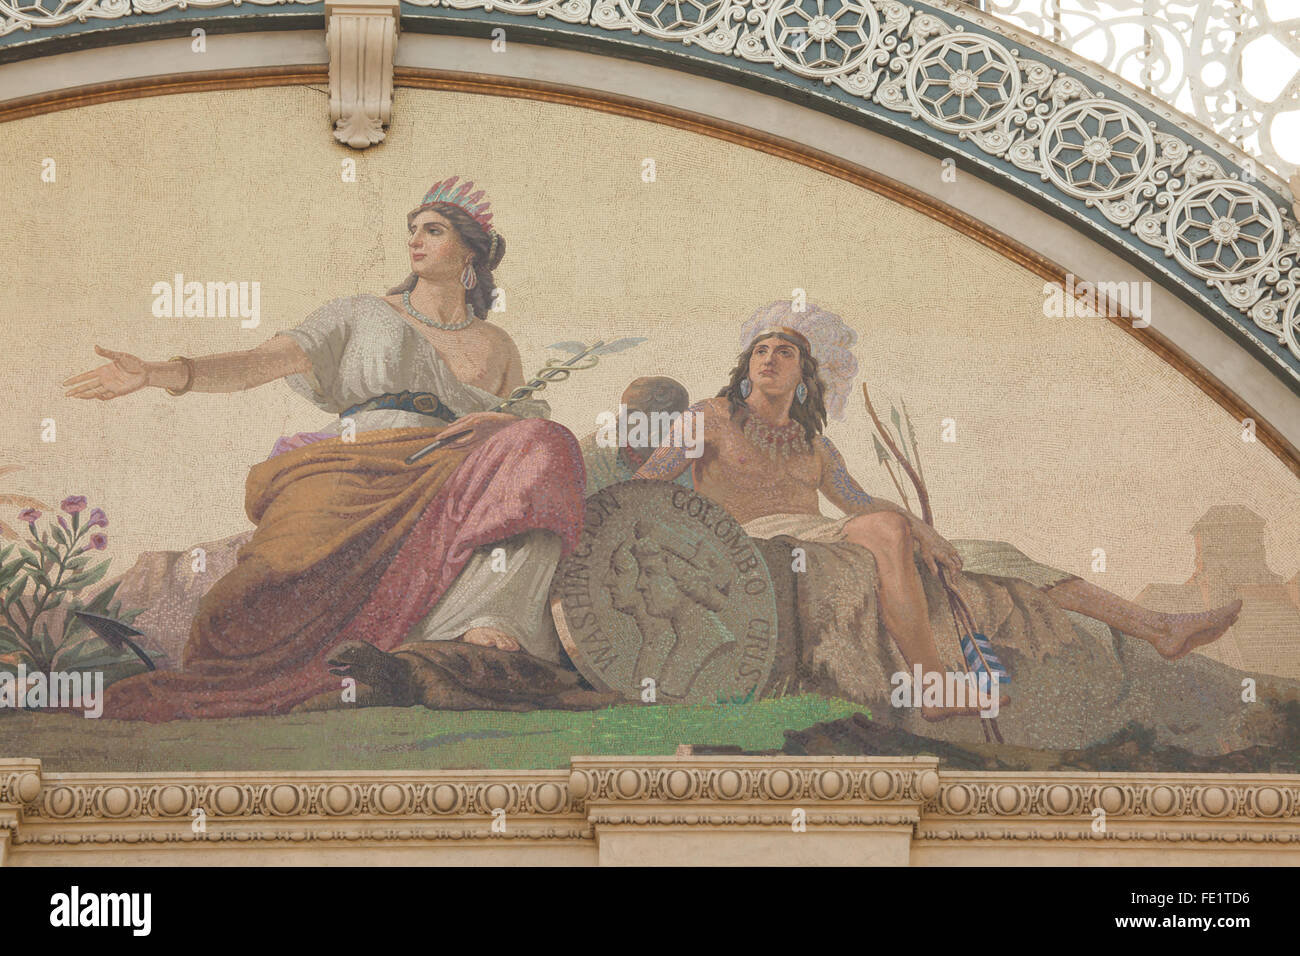 America. Mosaico allegorico progettato da Raffaele Casnedi in Galleria Vittorio Emanuele II a Milano, lombardia, italia. Foto Stock